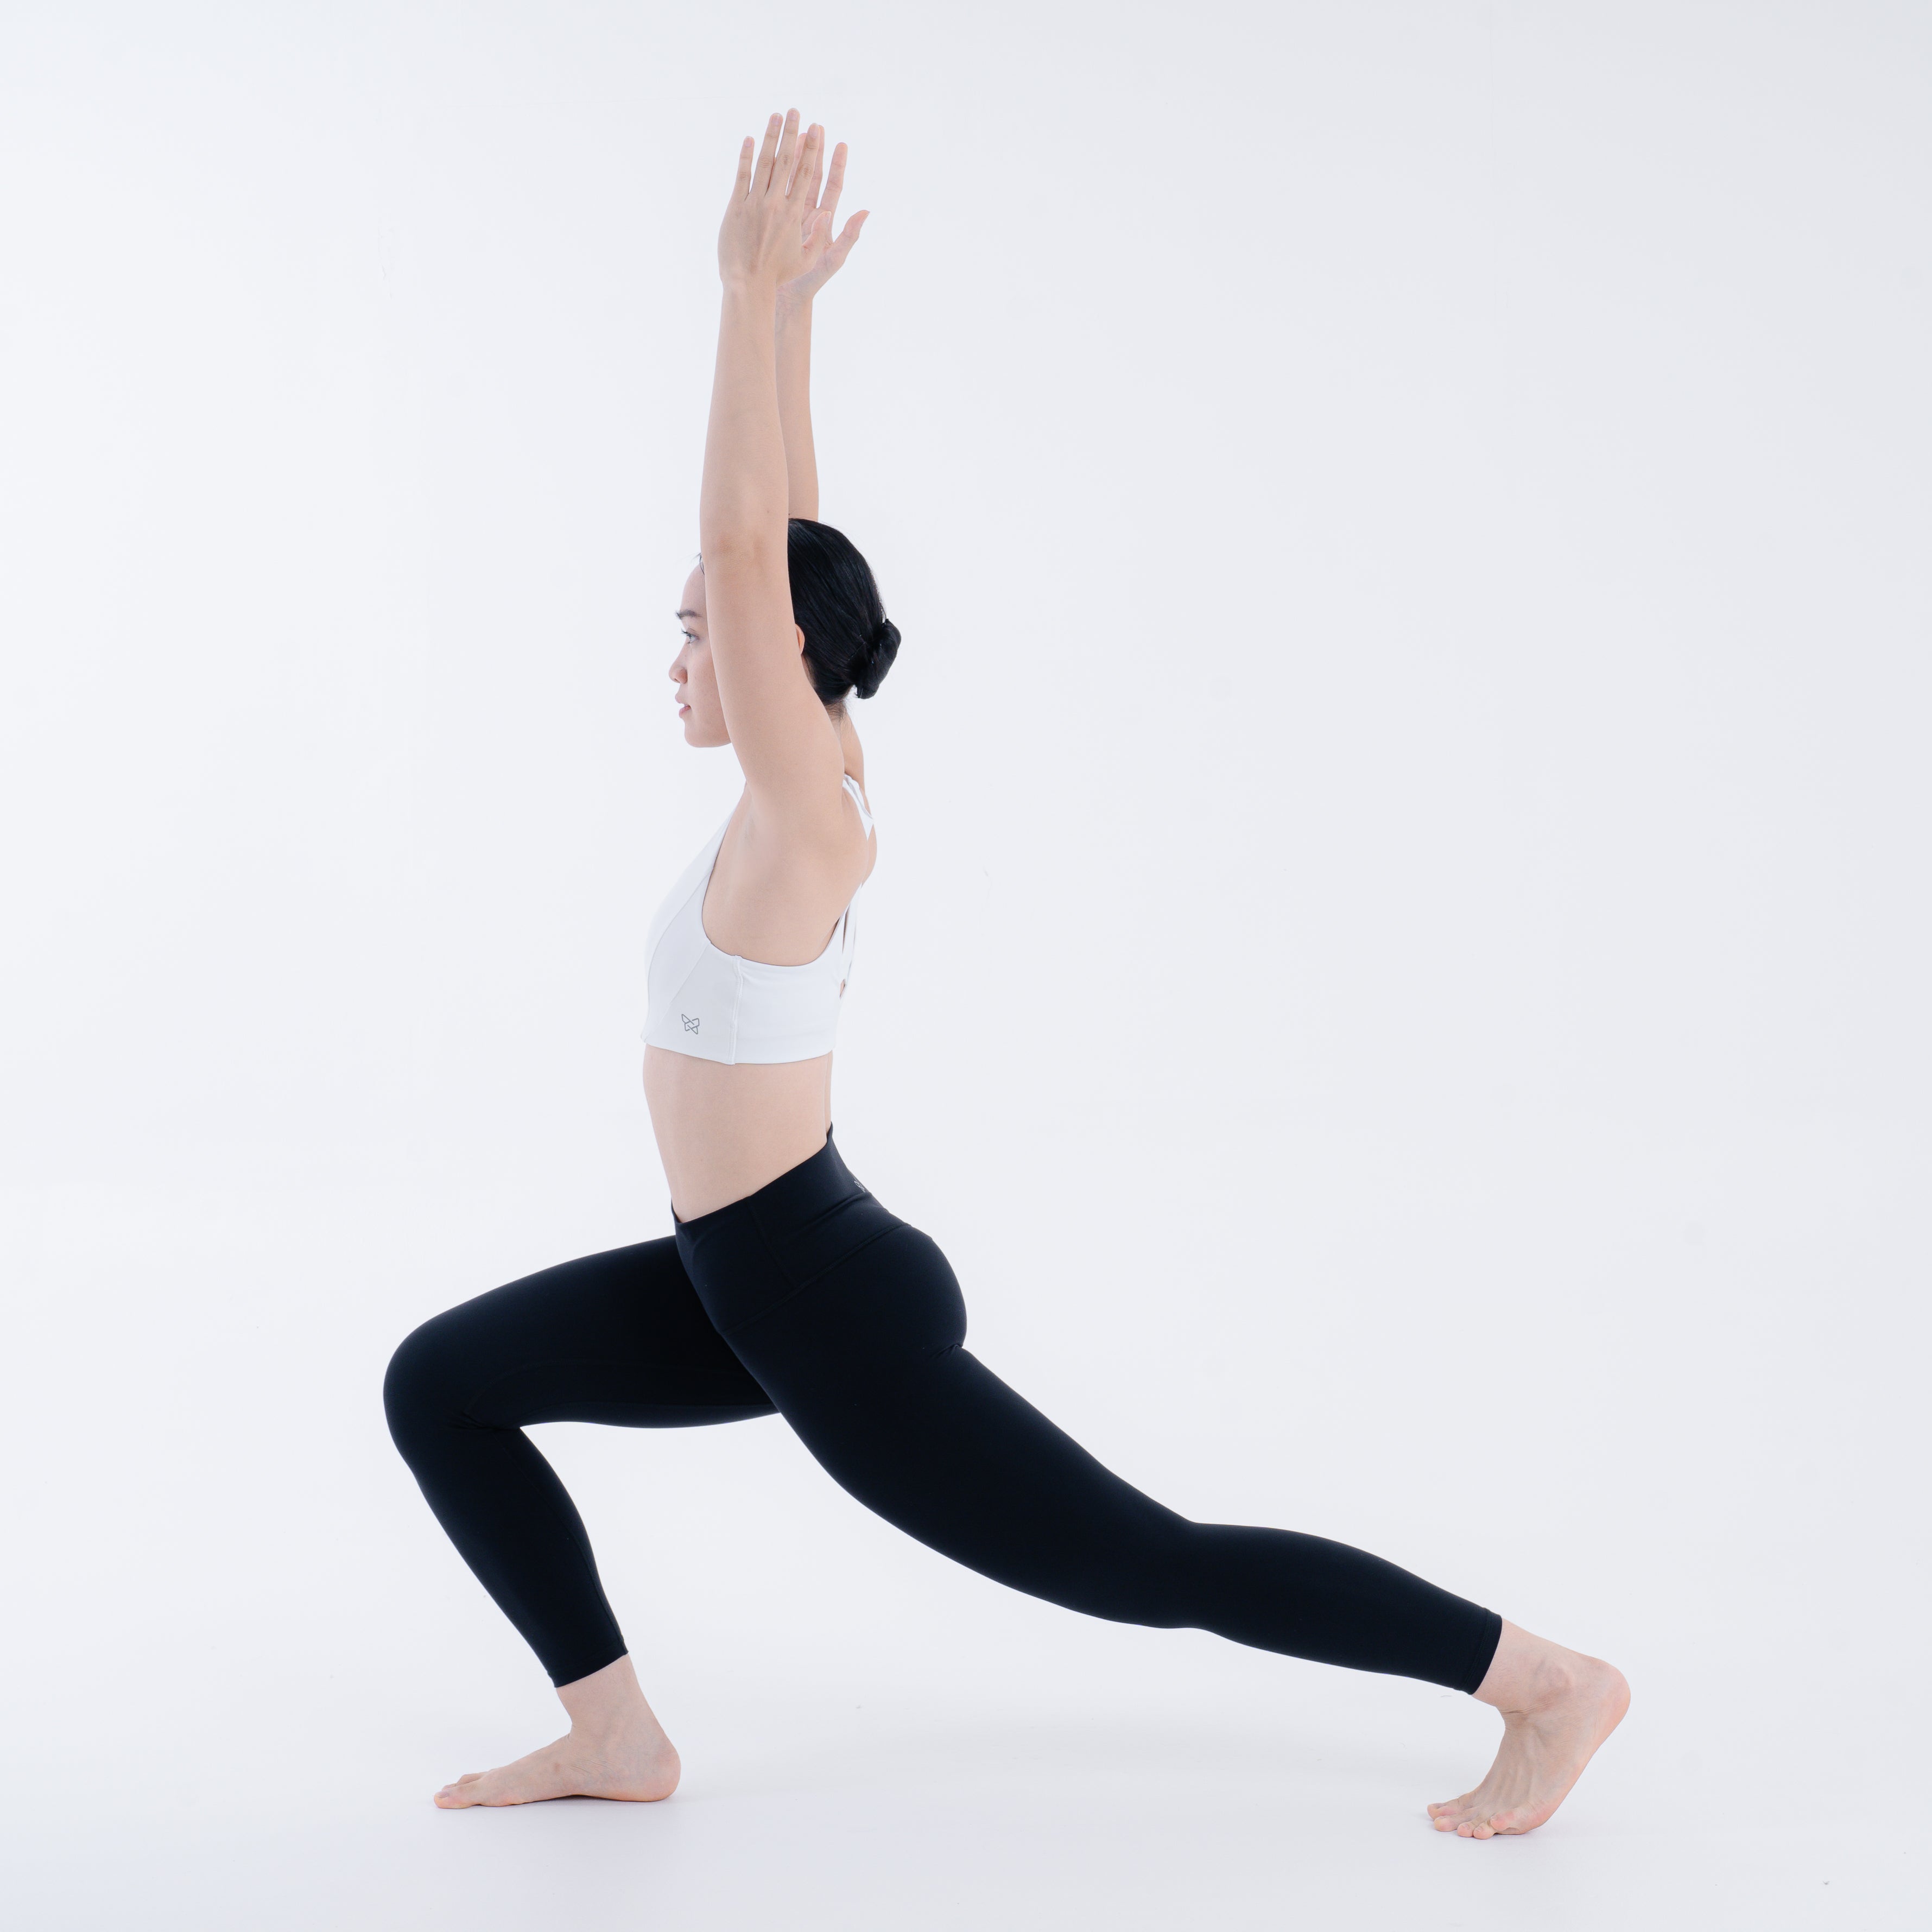 Women Yoga Full Length Leggings